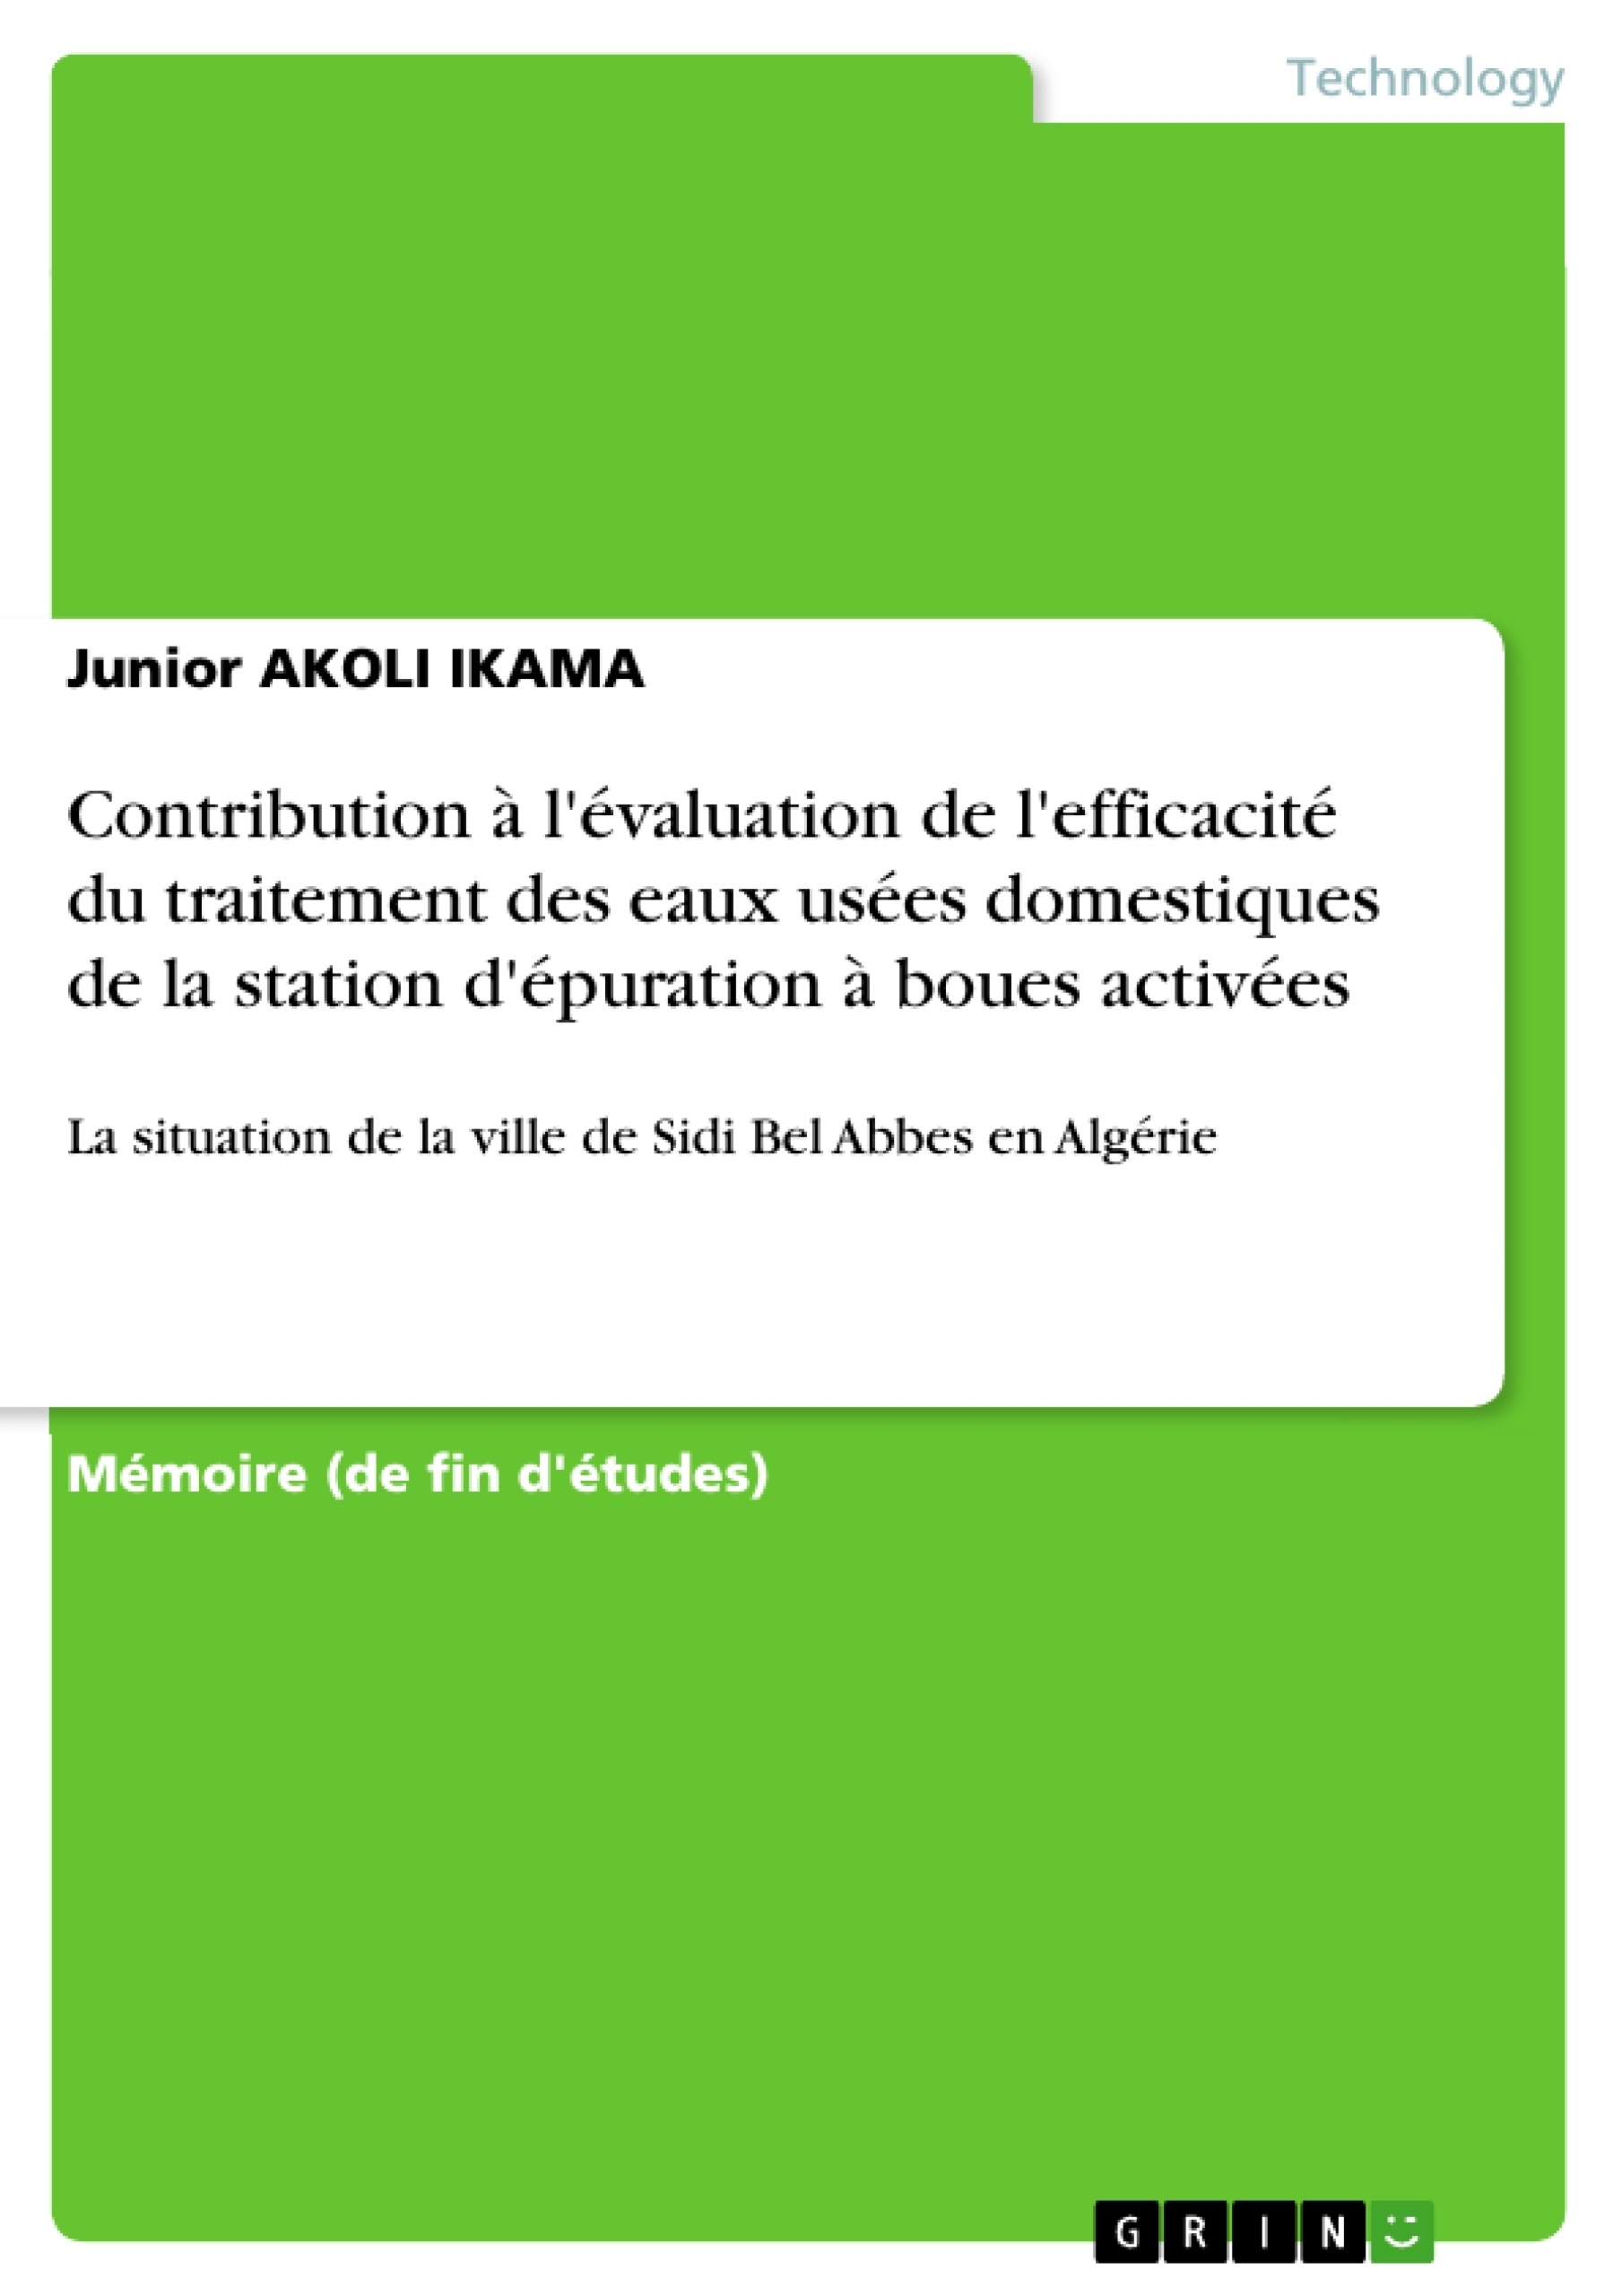 Page MENU DE LA SEMAINE - Téléchargement instantané - PDF à